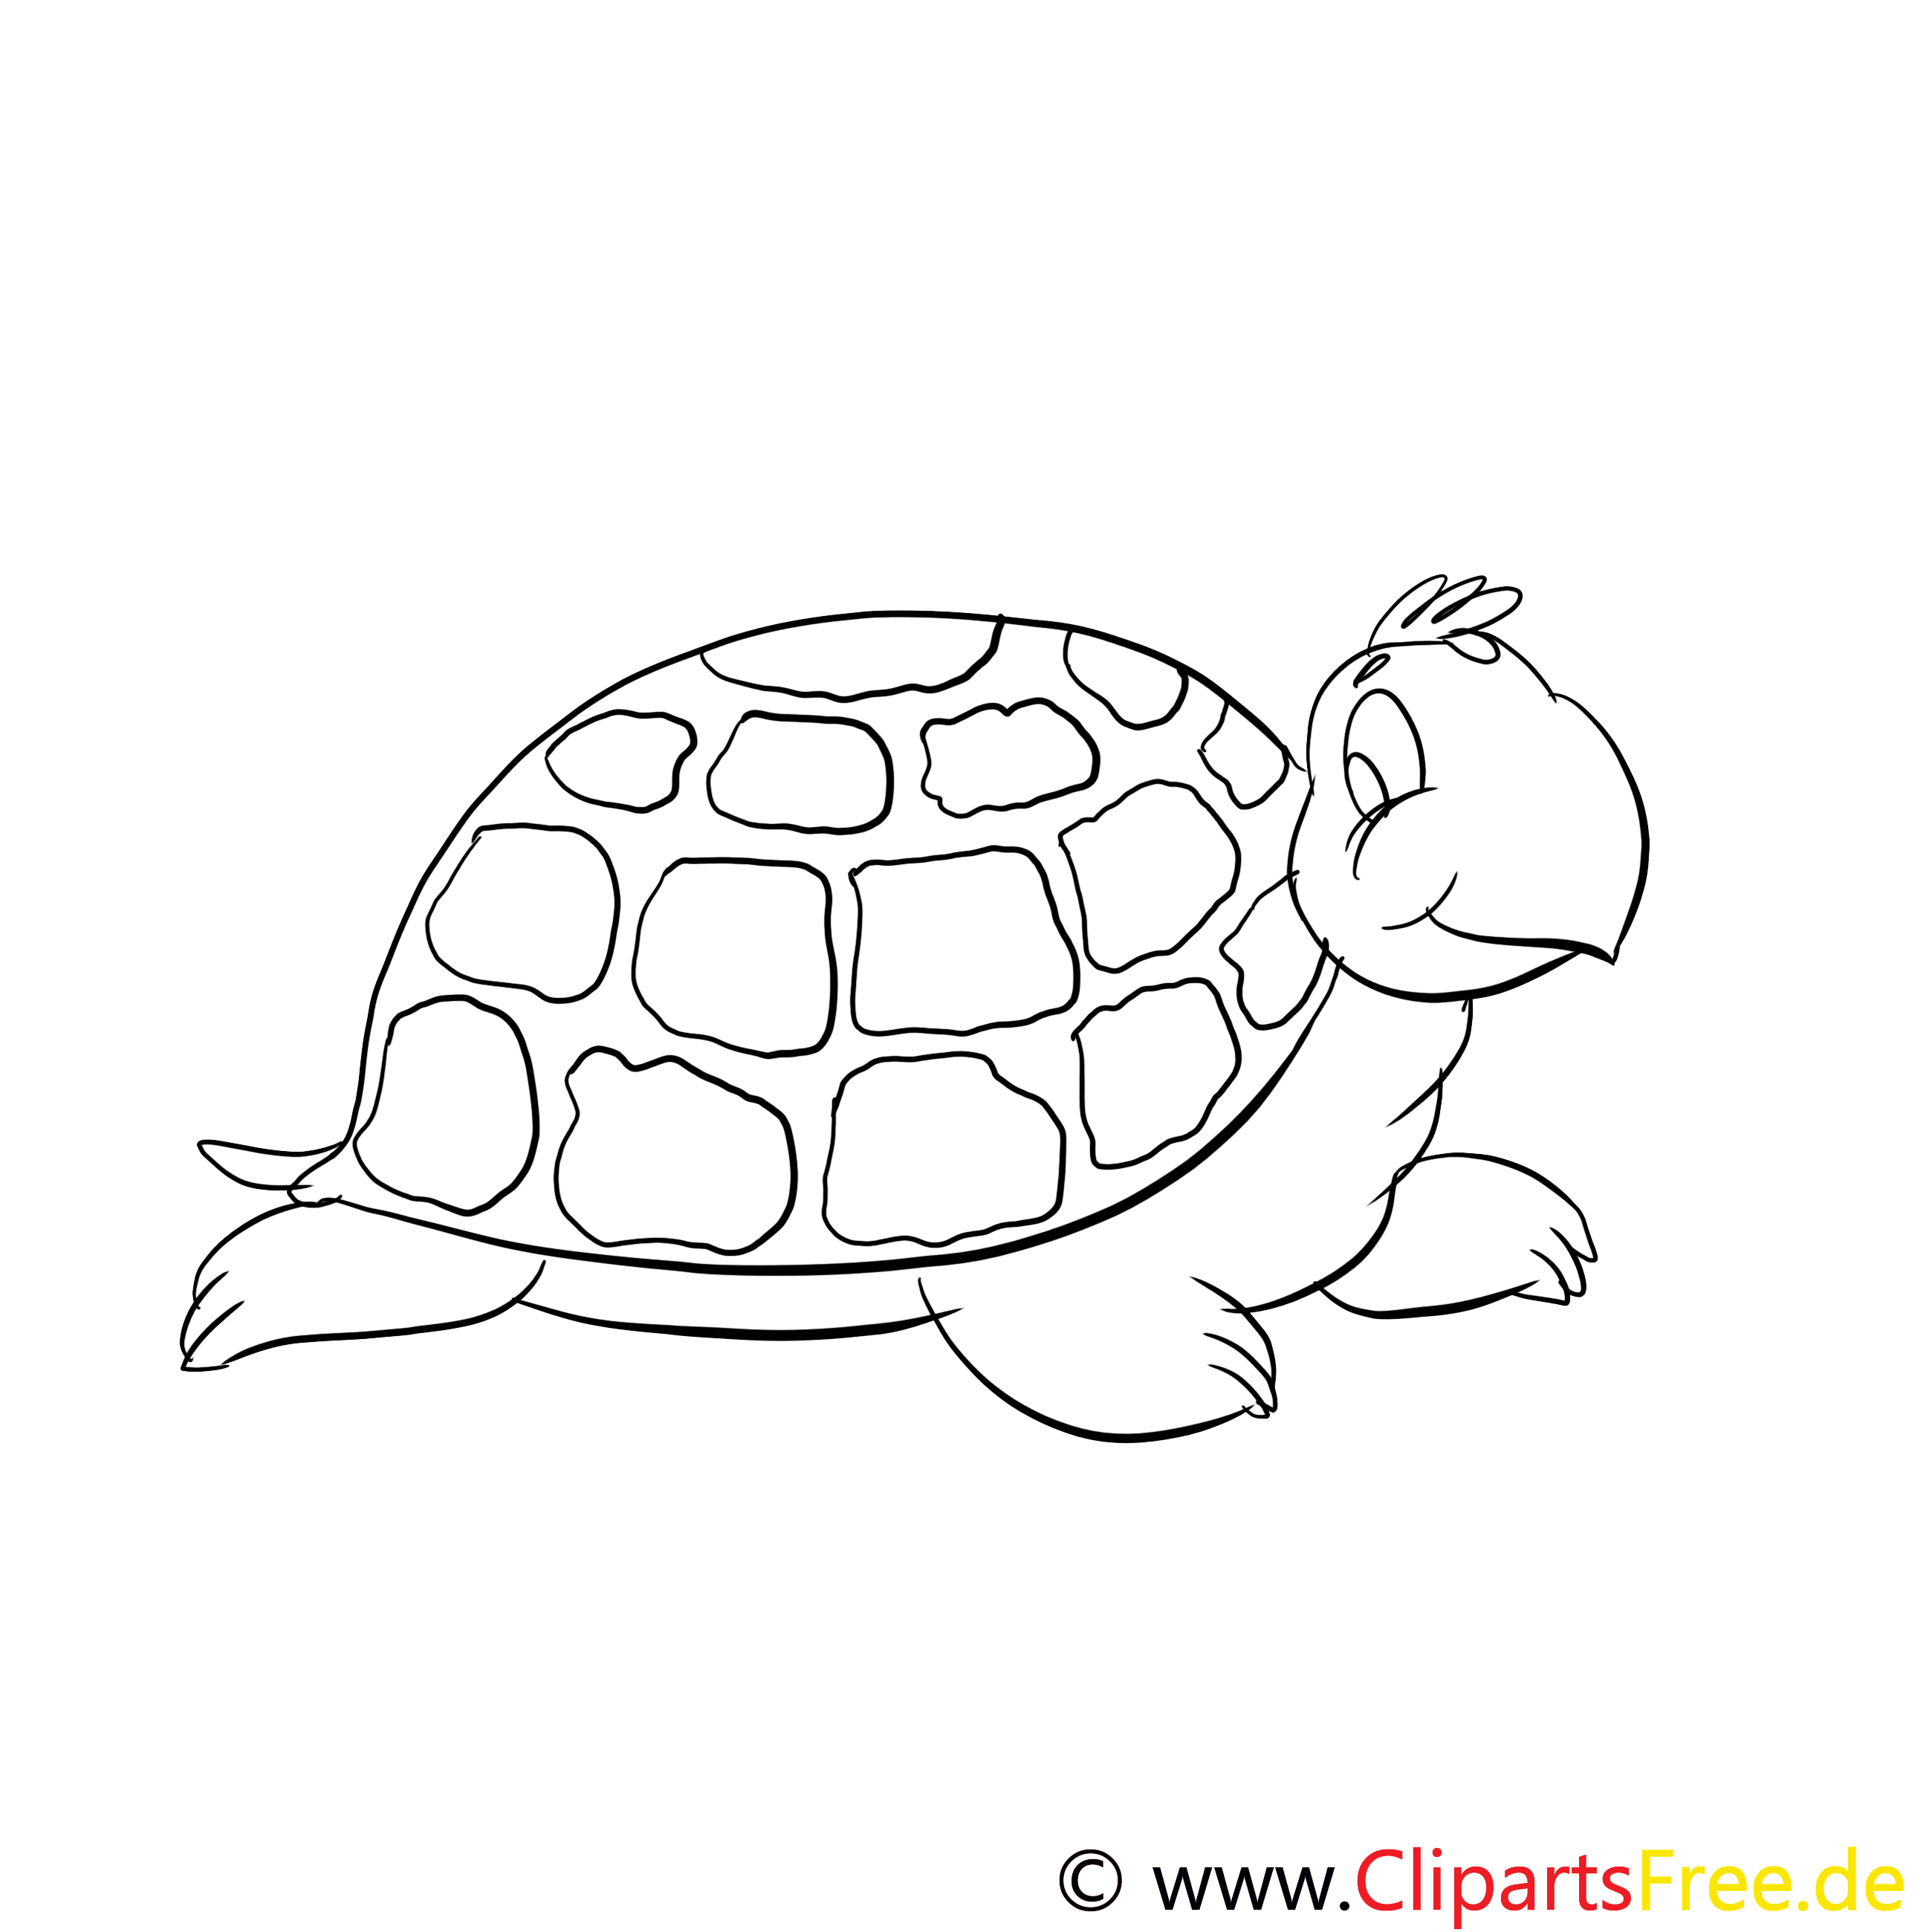 Муравей и черепаха раскраска